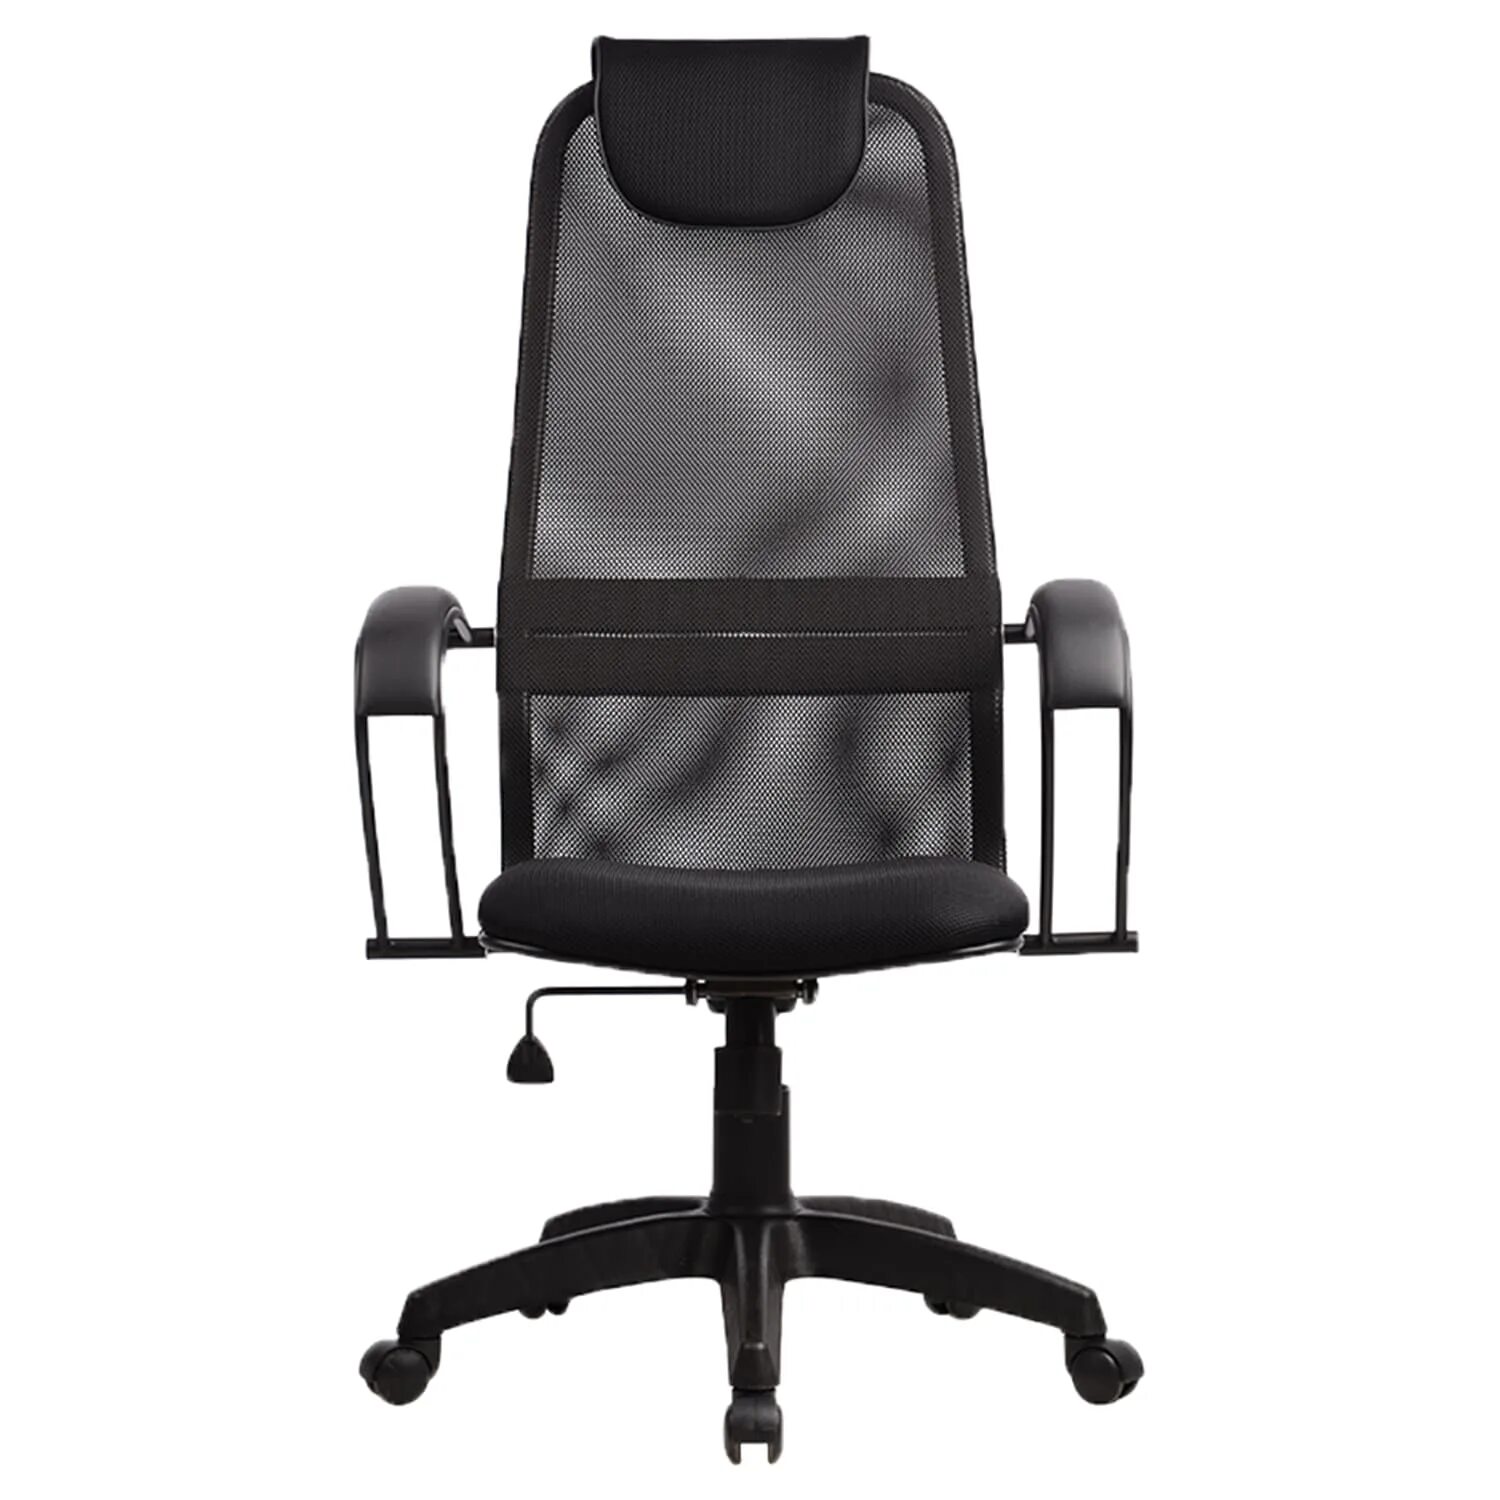 Кресло компьютерное сетчатое. Кресло Метта BP-8 pl. Офисное кресло Метта BP-8pl. Кресло Метта s-ВР-8. Кресло Метта ВР-8 pl.